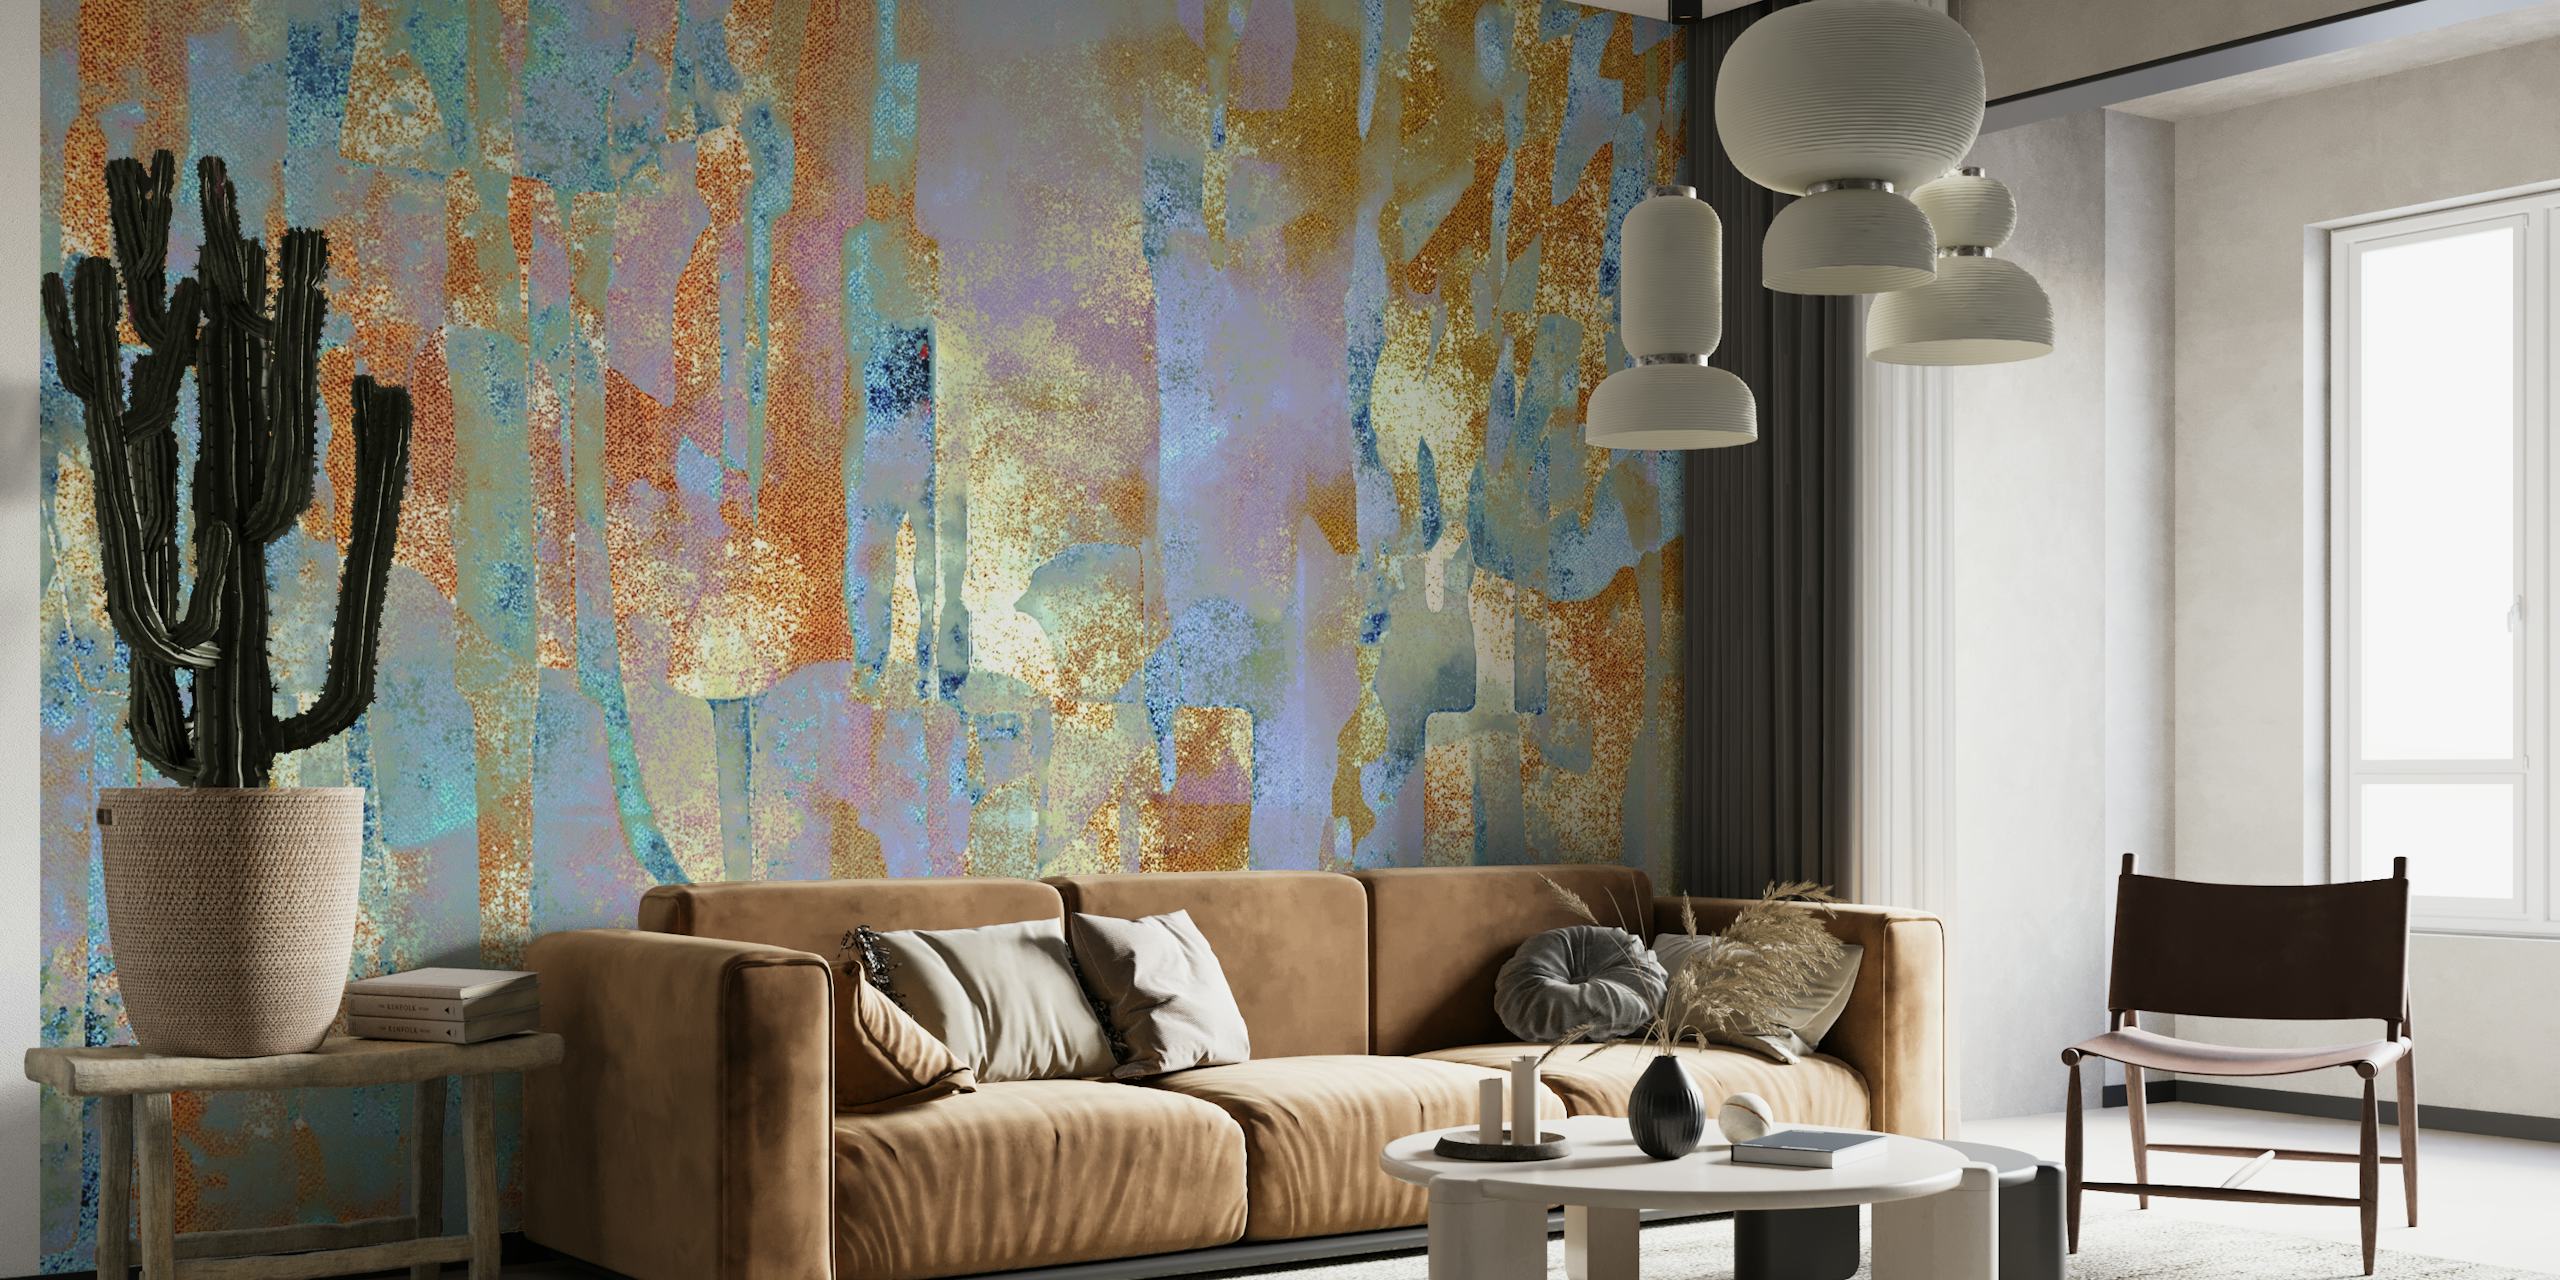 Mural de parede inspirado em tinta africana em pano de lama com texturas ricas e tons terrosos